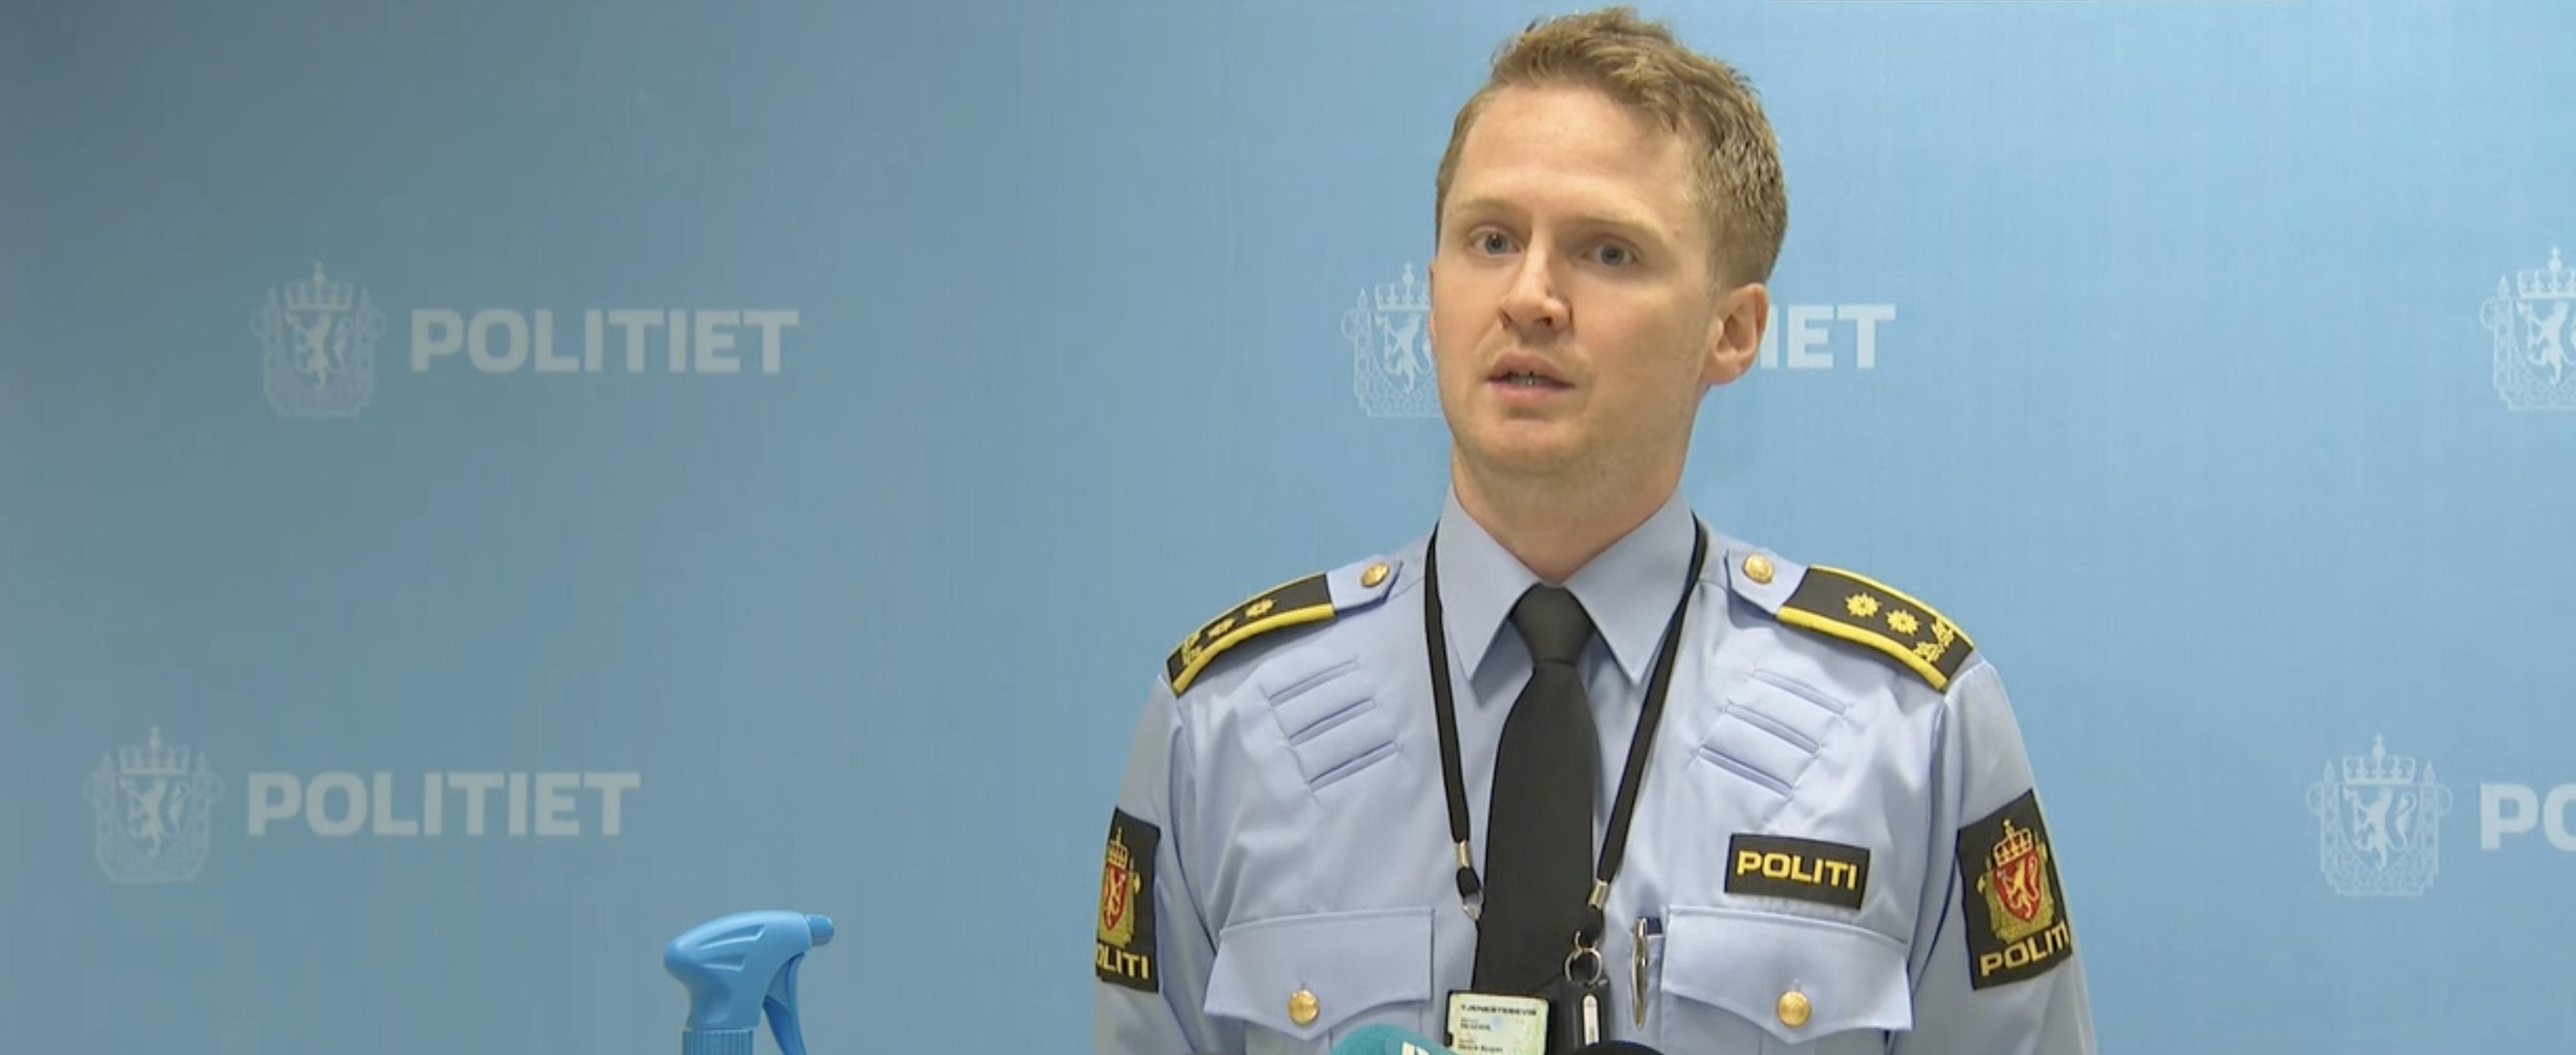 Politiet etterforsker mulig drap i Kristiansand